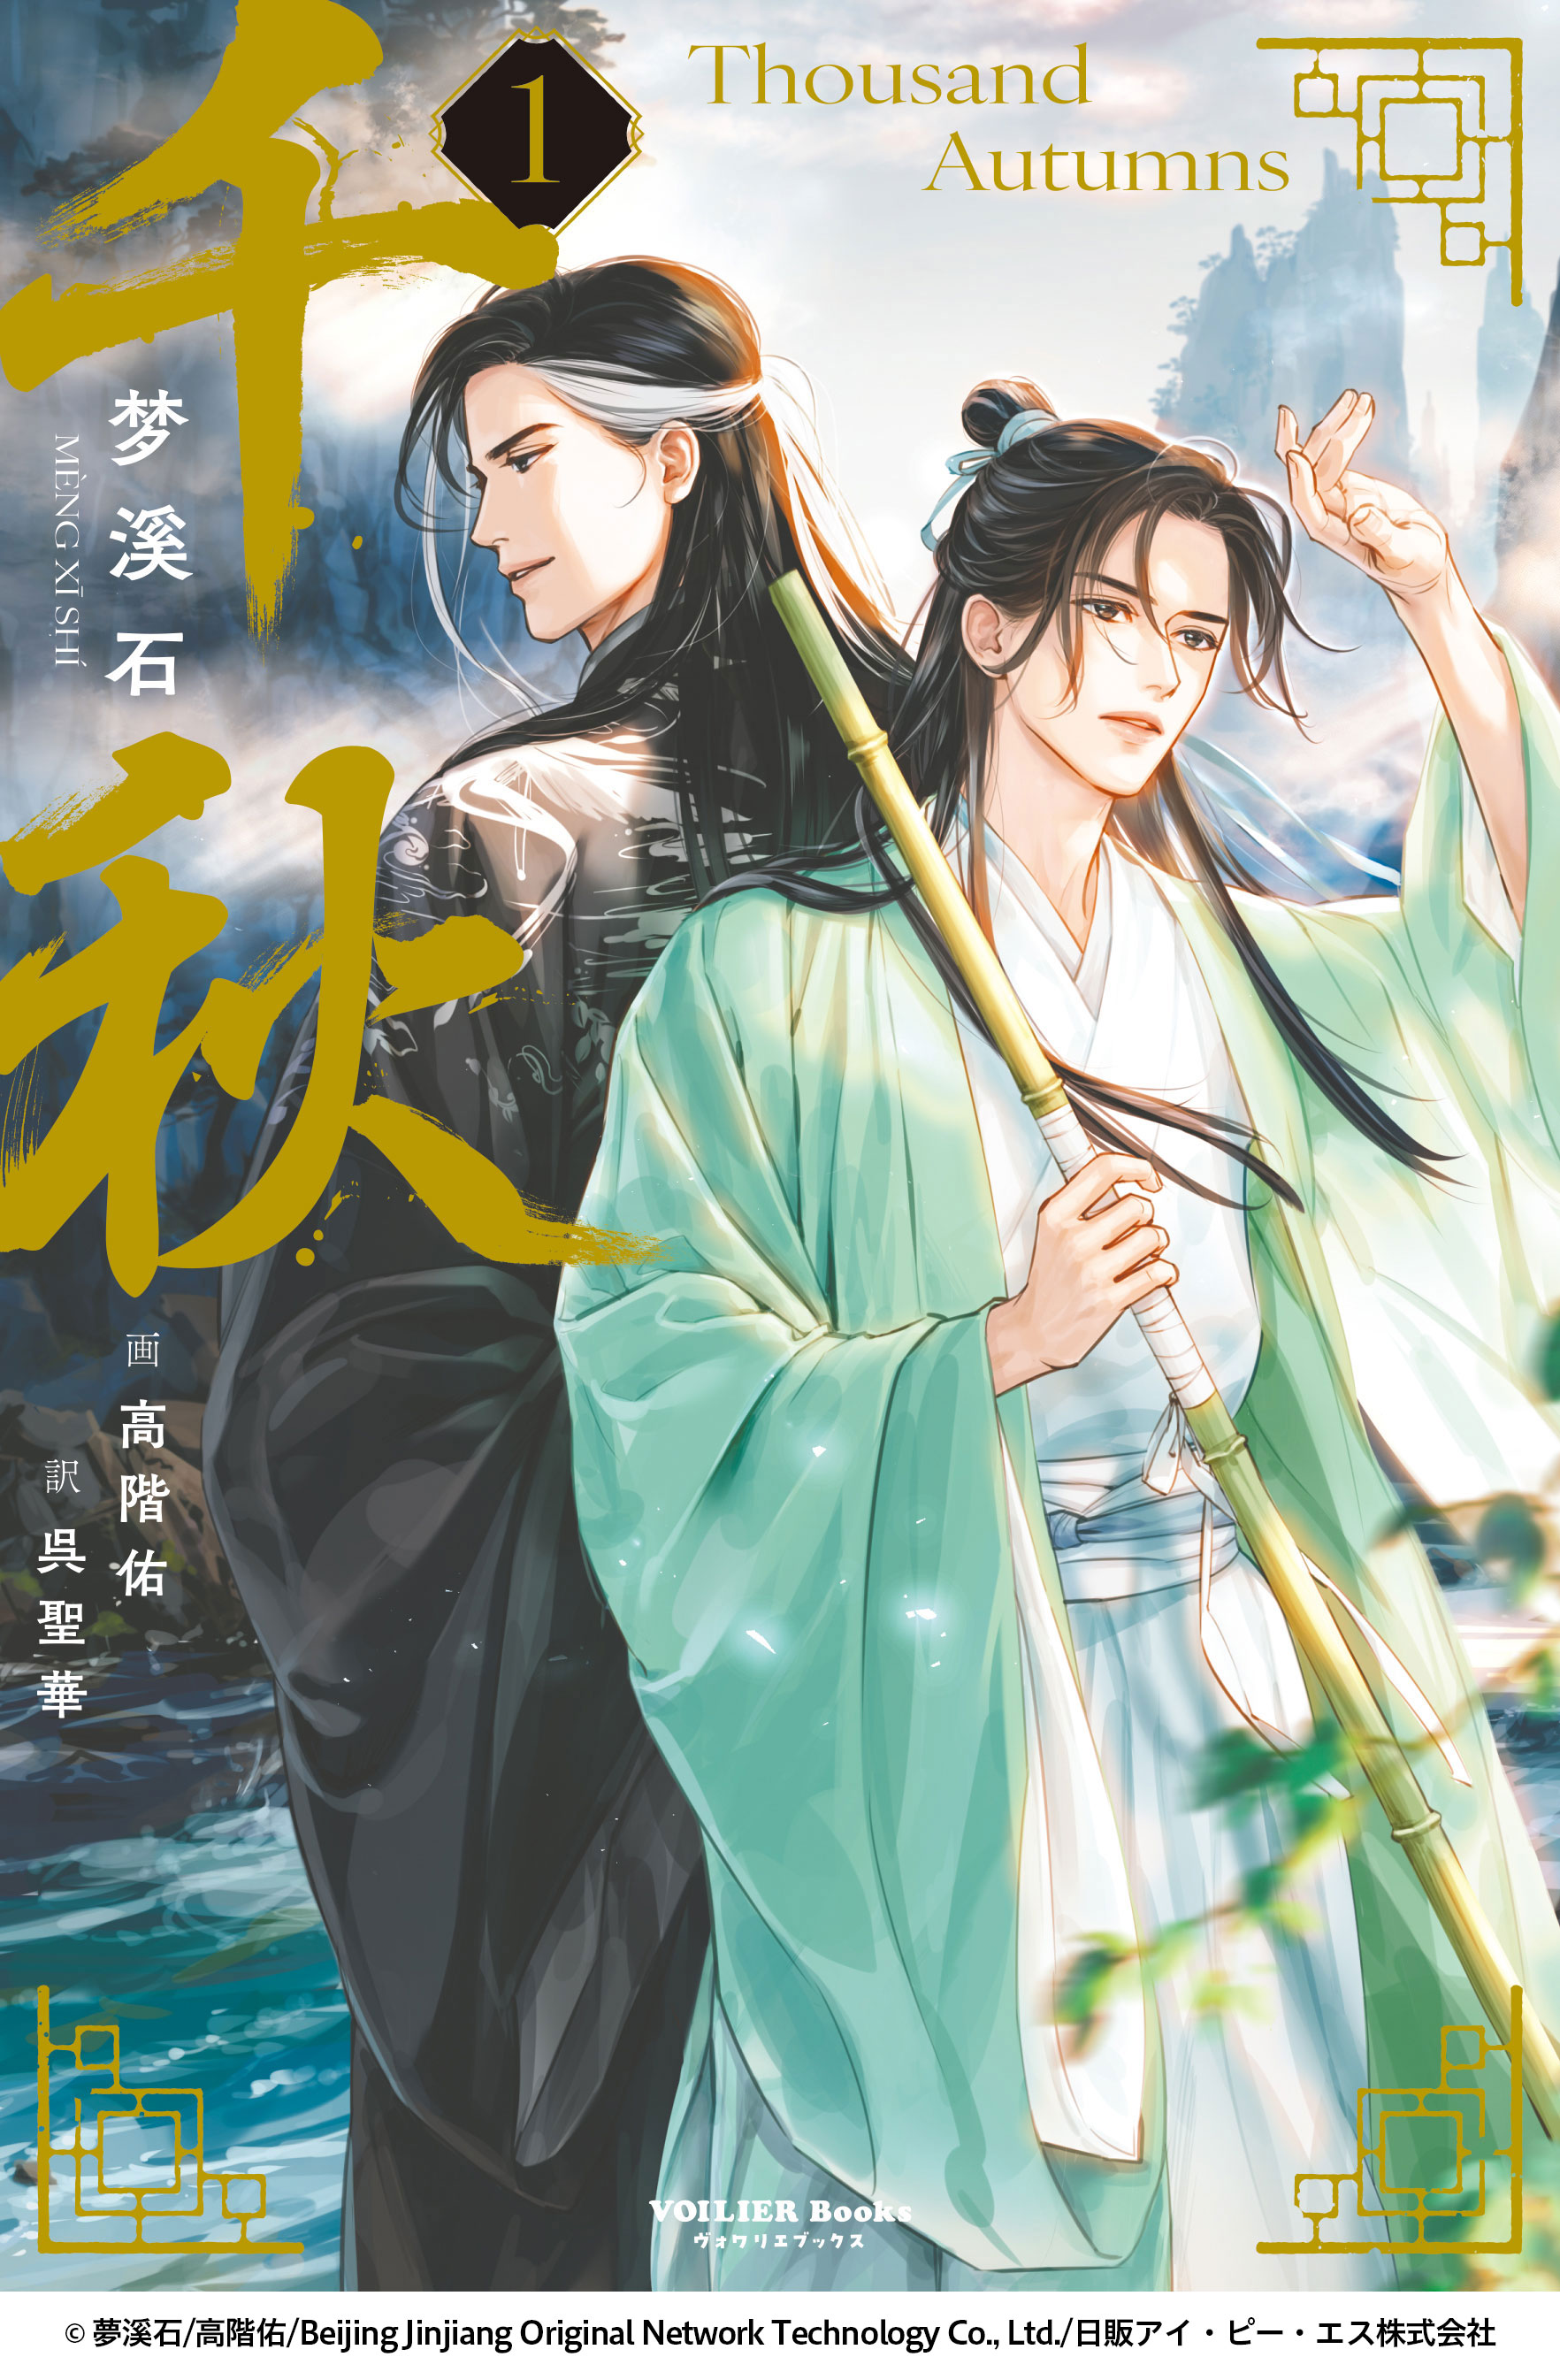 [ китайский BL] Chiaki no. 1 шт ( специальное оборудование версия )[ язык : японский язык ][9/15 продажа ]vowalie книги Boys Love 